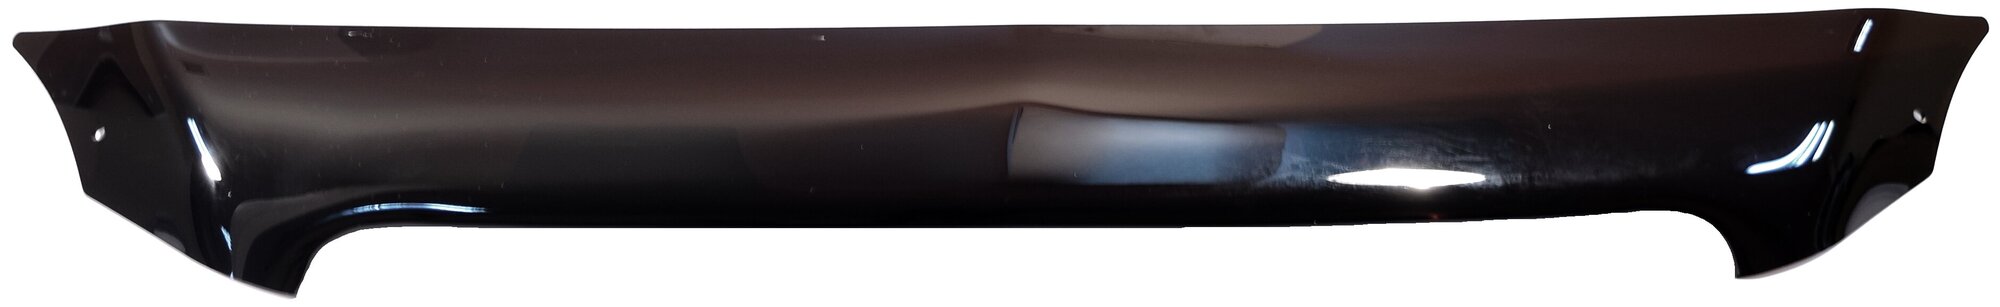 Дефлектор капота SIM SCHAVEH0812 для Chevrolet Aveo Chevrolet Captiva BMW X6